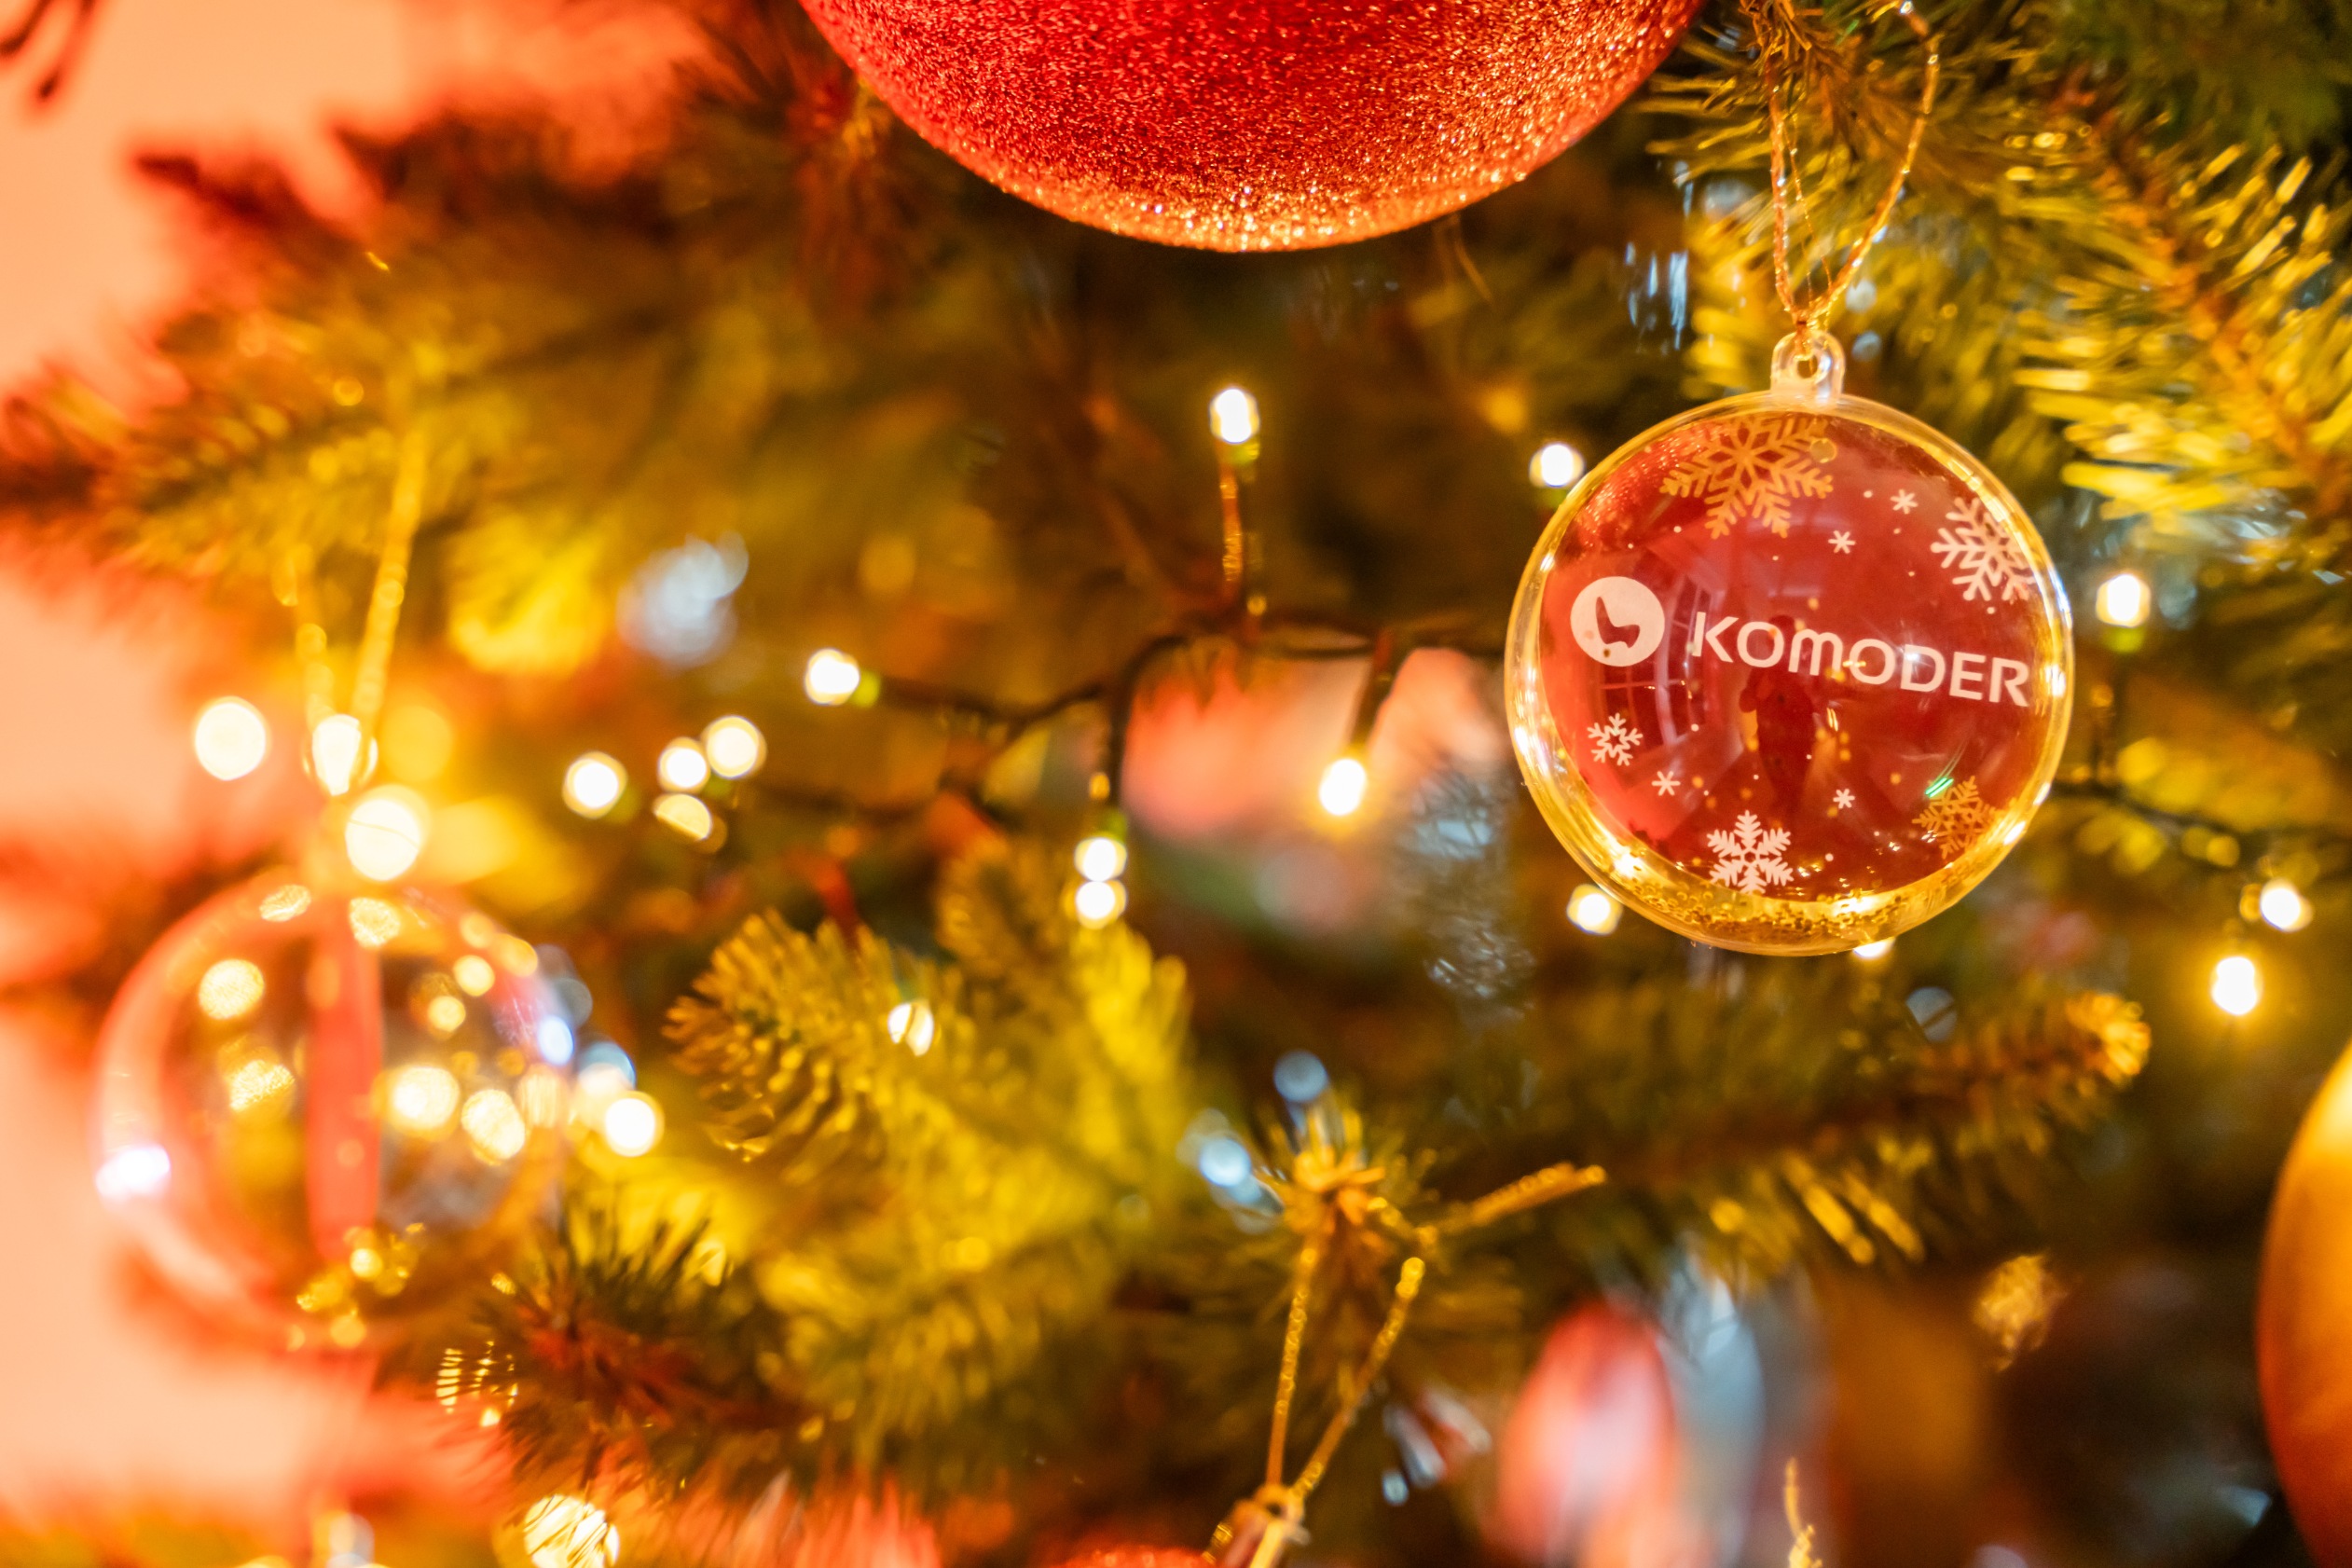 Aranjament cu ornamente de Crăciun și un glob roșu Komoder